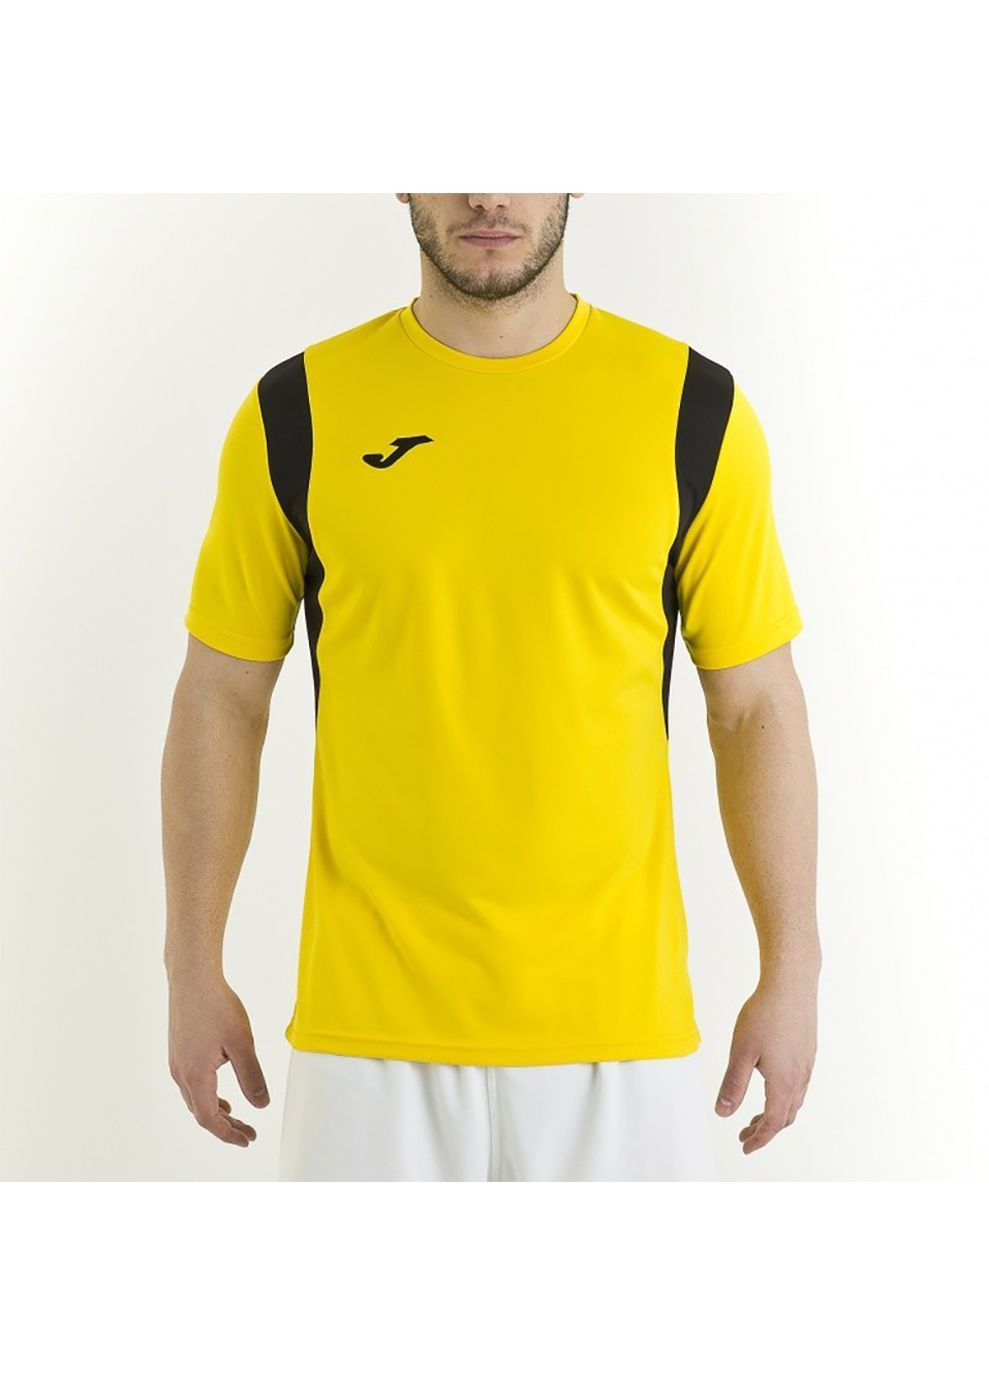 Желтая футболка t-shirt dinamo yellow s/s желтый 100446.900 Joma